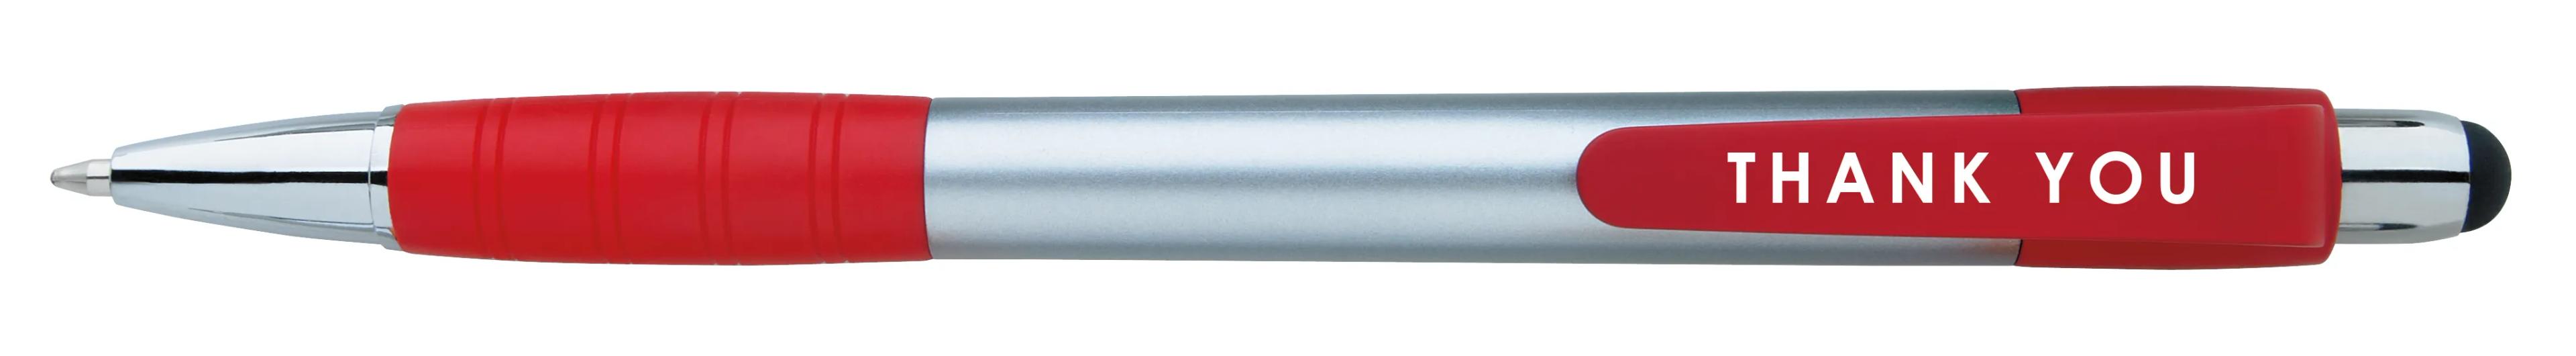 Silver Element Stylus Pen 50 of 53